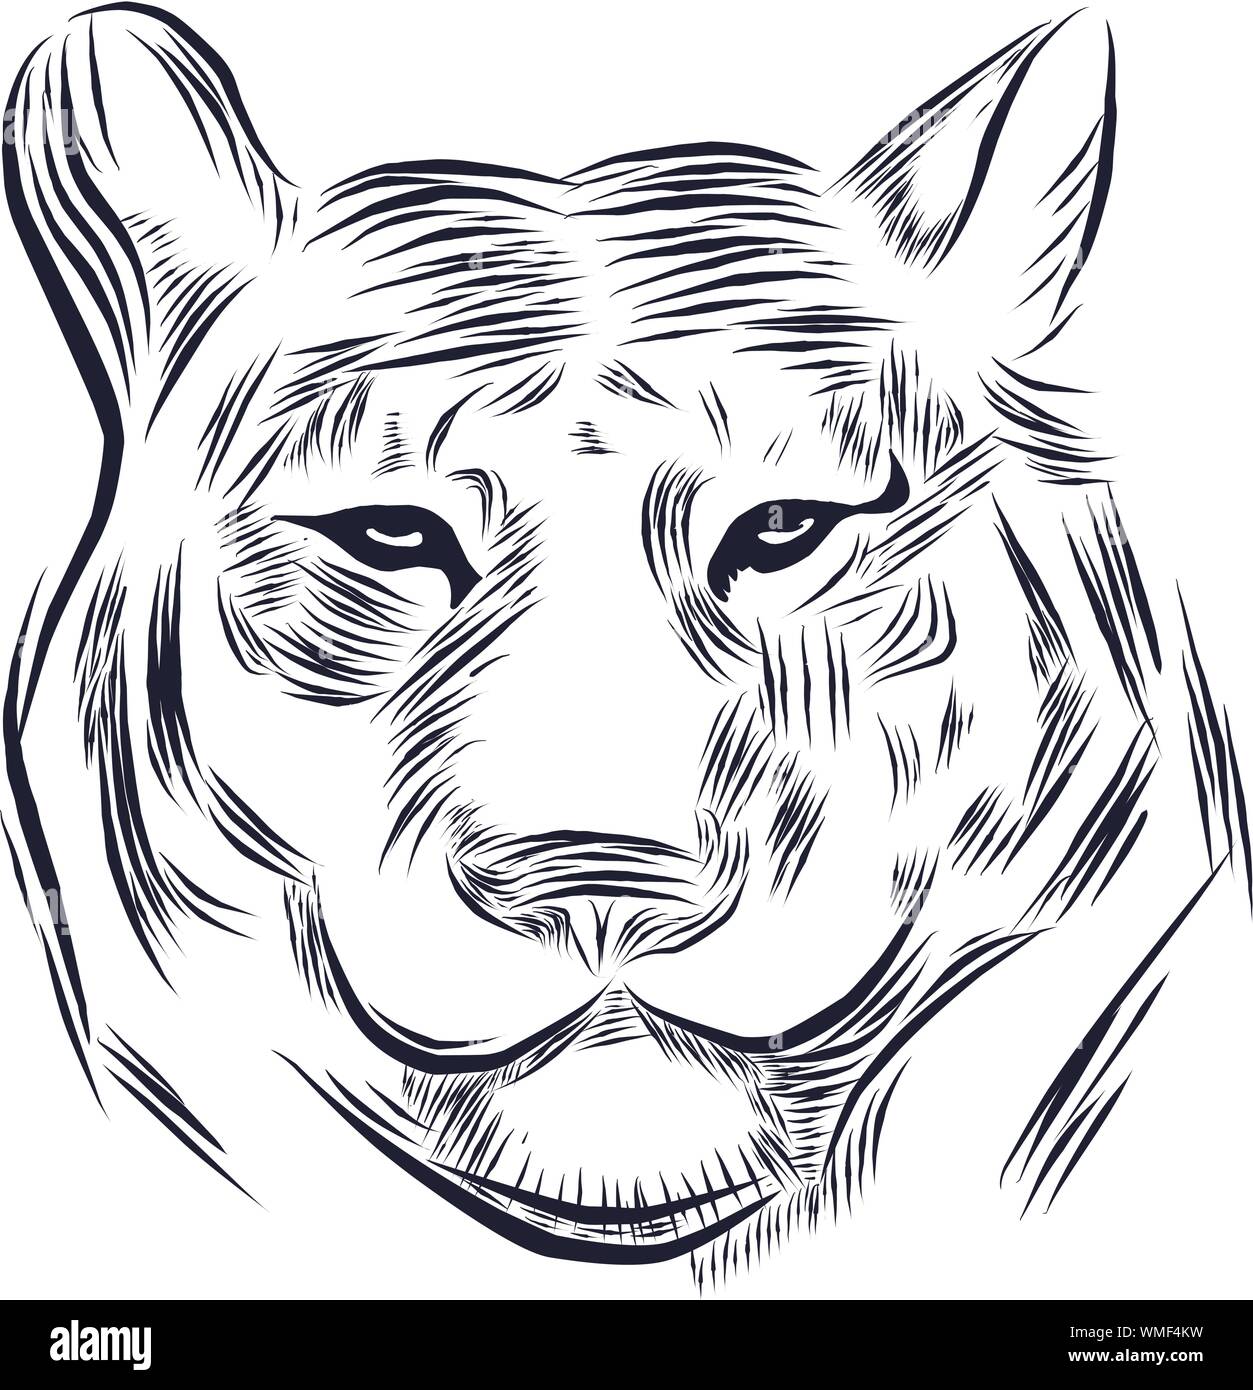 Illustrazione di linea di un testa di tiger, adatto come tattoo, squadra mascotte, simbolo per zoo o animale centro di conservazione Illustrazione Vettoriale